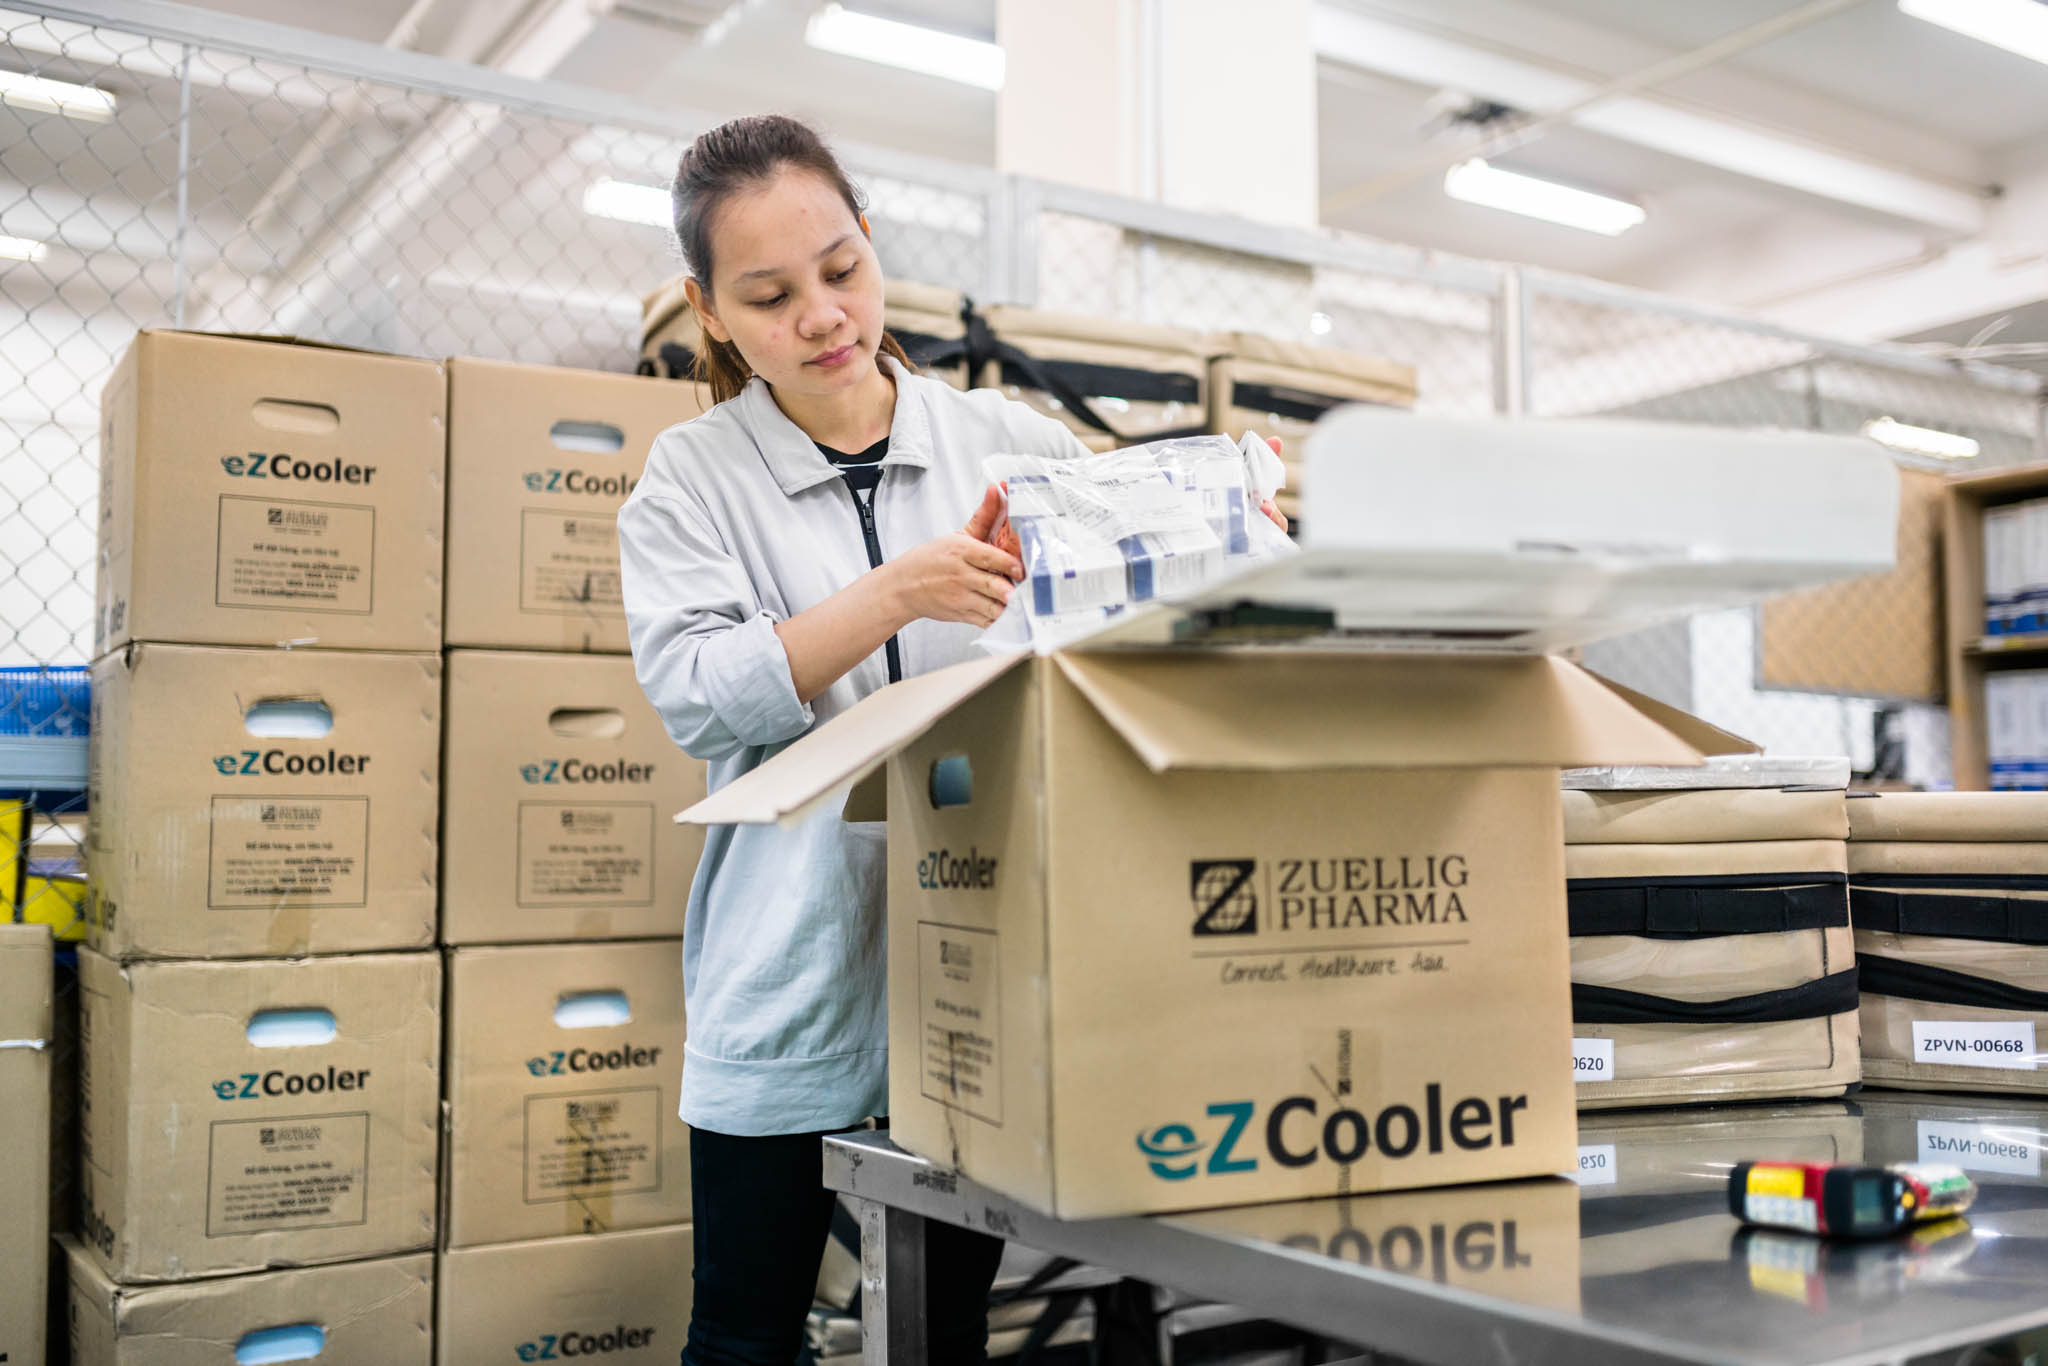 Zuellig Pharma cold storage EZCooler